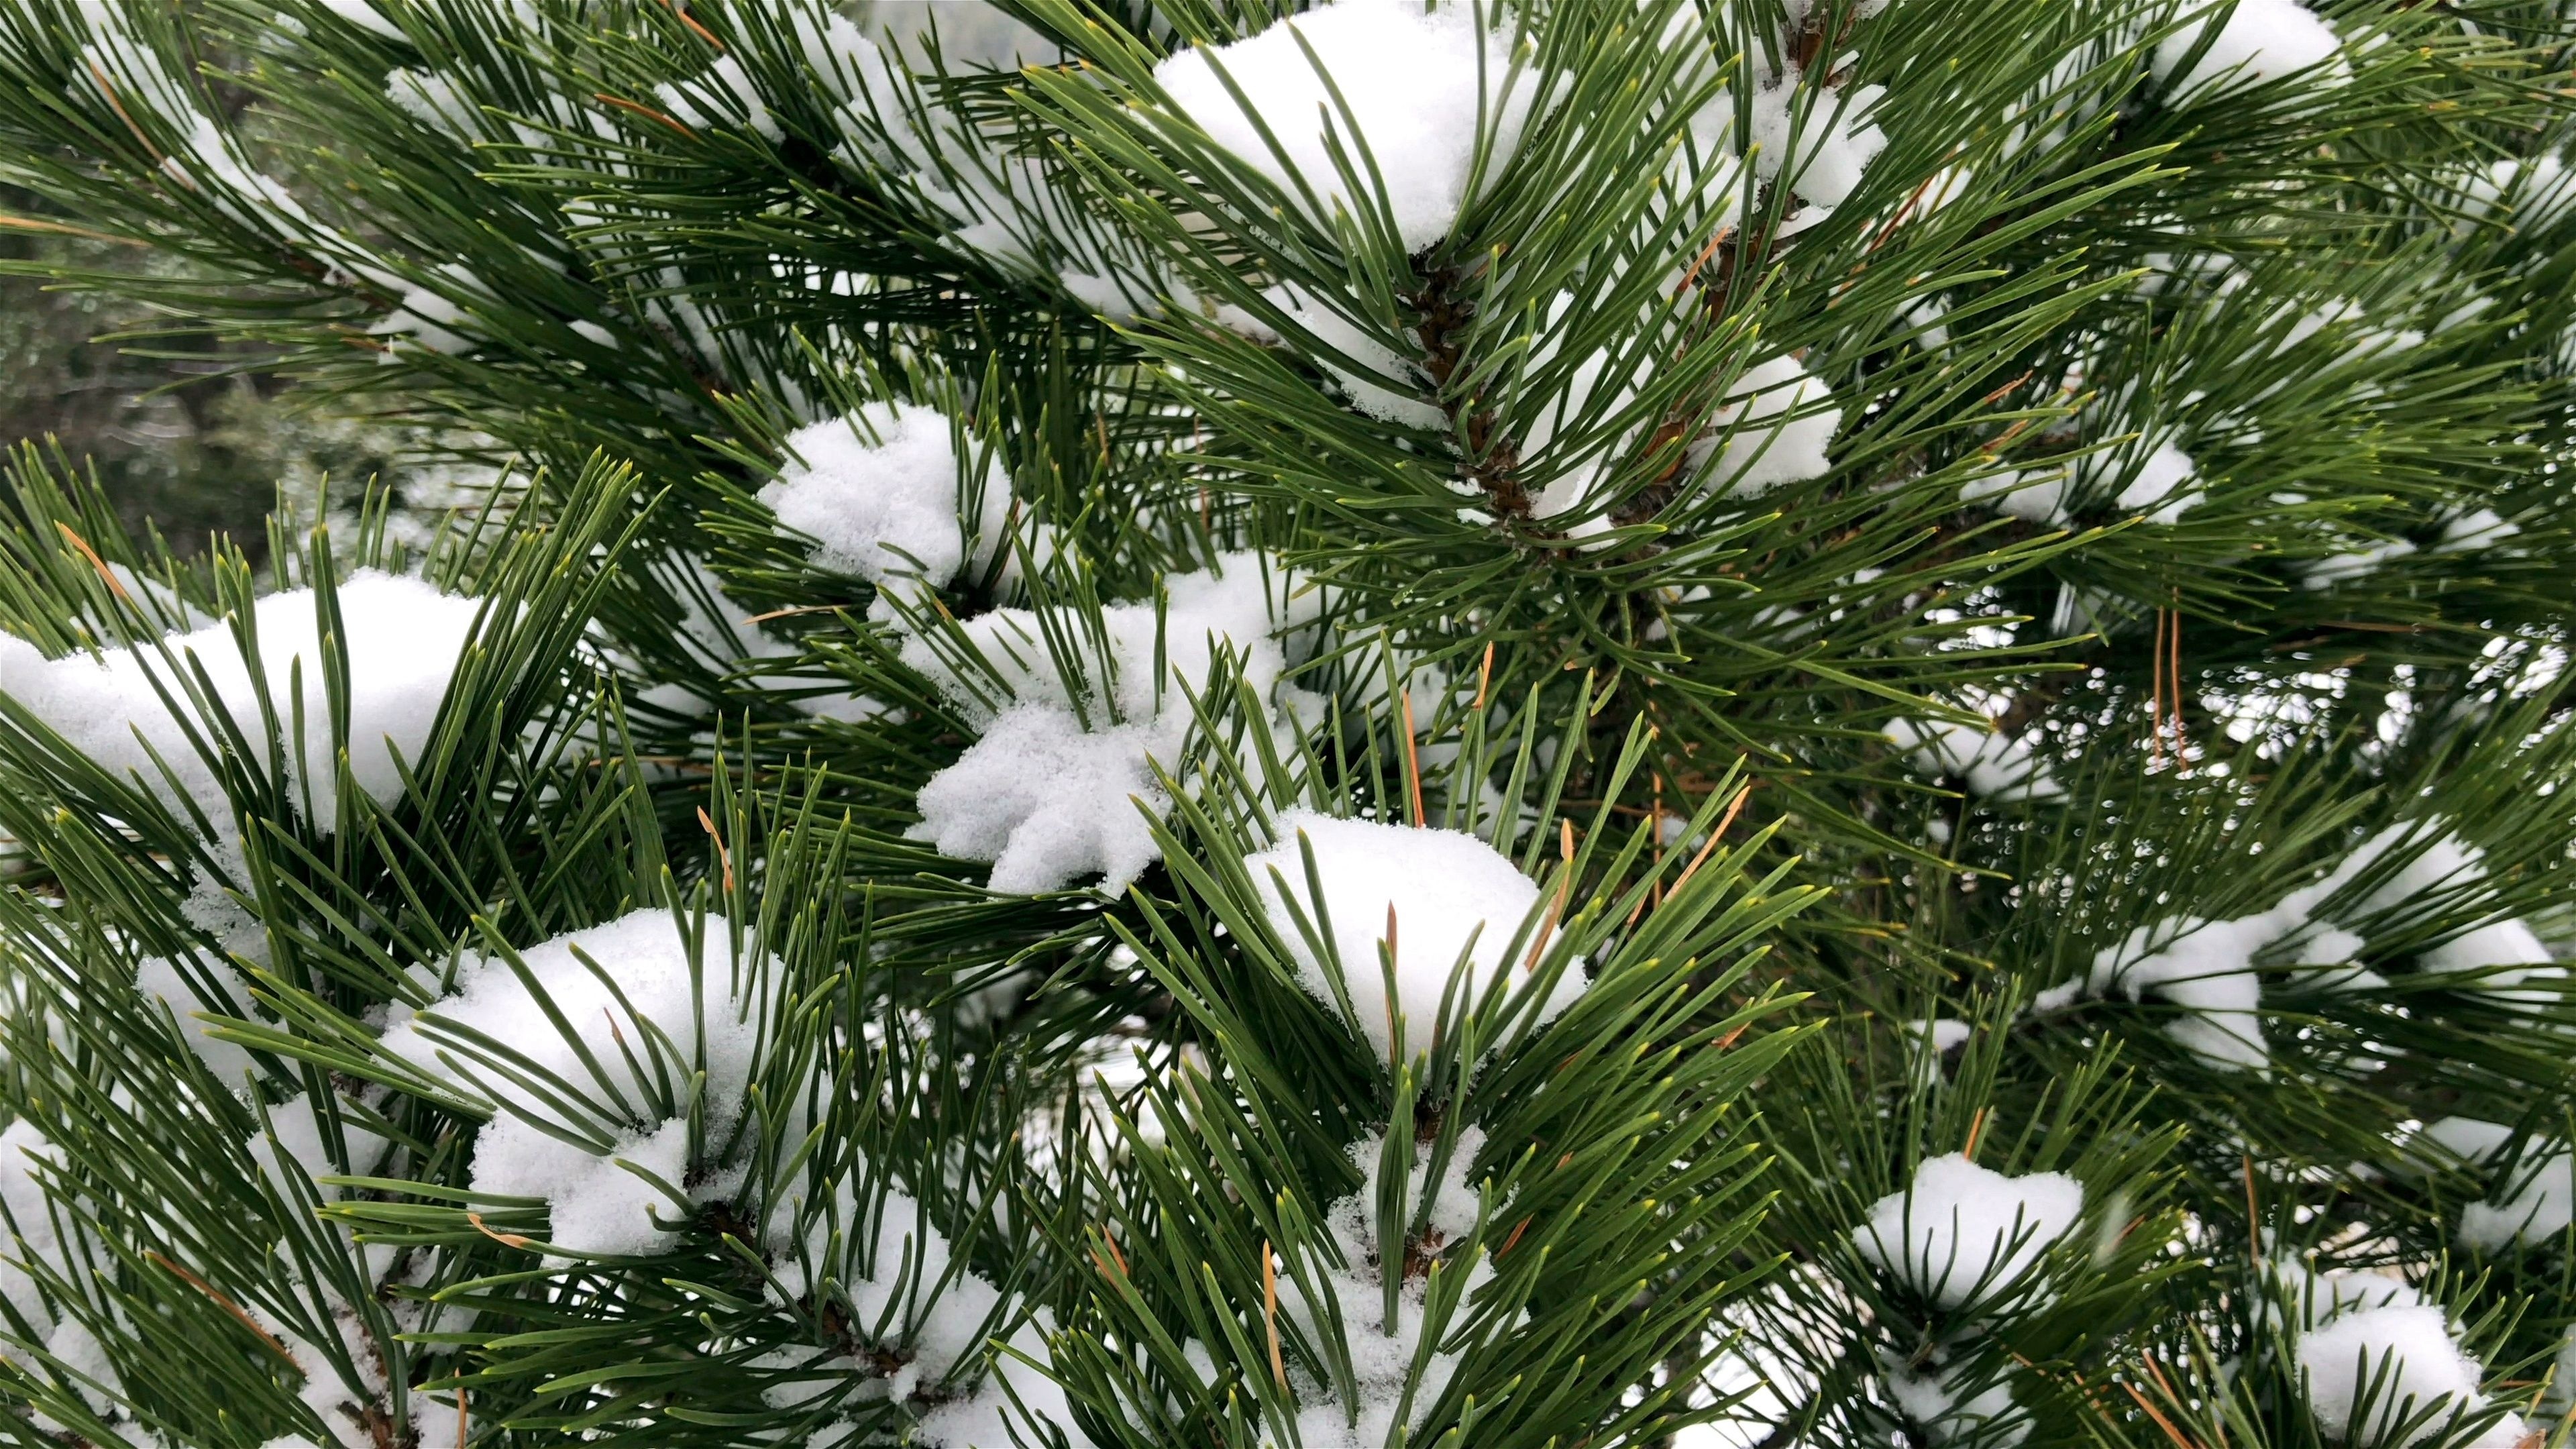 Snowy pine tree, Mountain landscape, Slow motion footage, Tranquil scenery, 3840x2160 4K Desktop